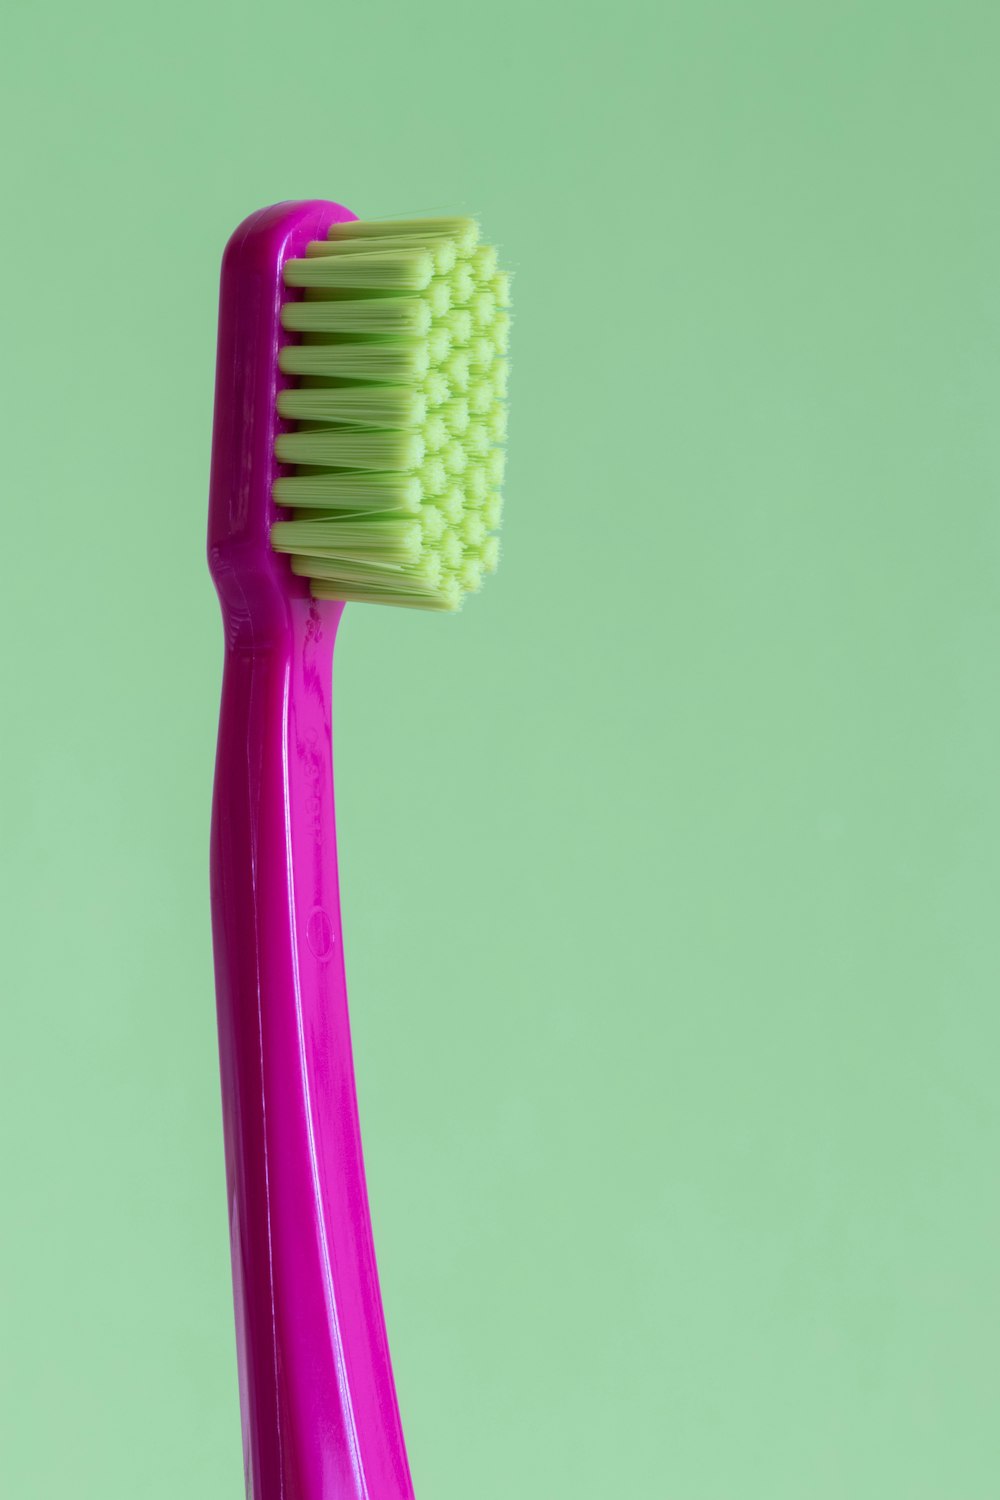 cepillo de dientes morado y verde